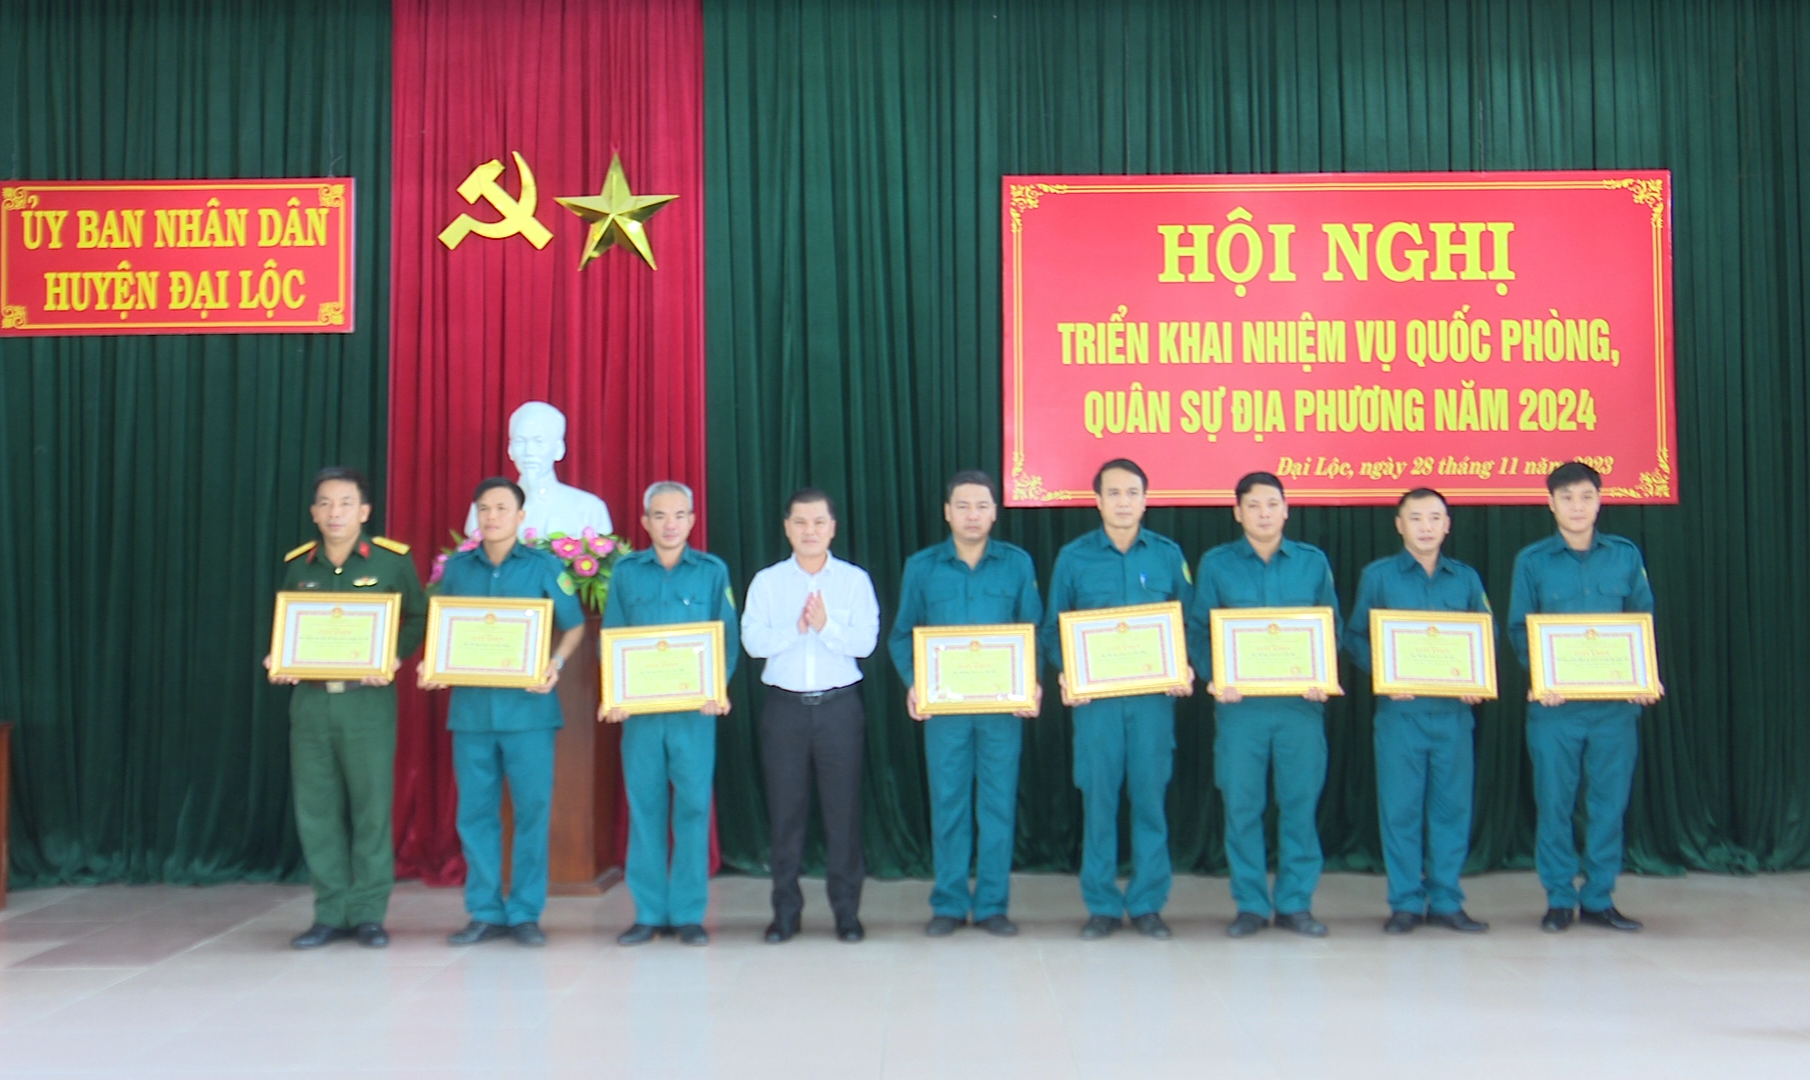 Lãnh đạo huyện Đại Lộc khen thưởng tập thể, cá nhân xuất sắc tại hội nghị. Ảnh: N.D